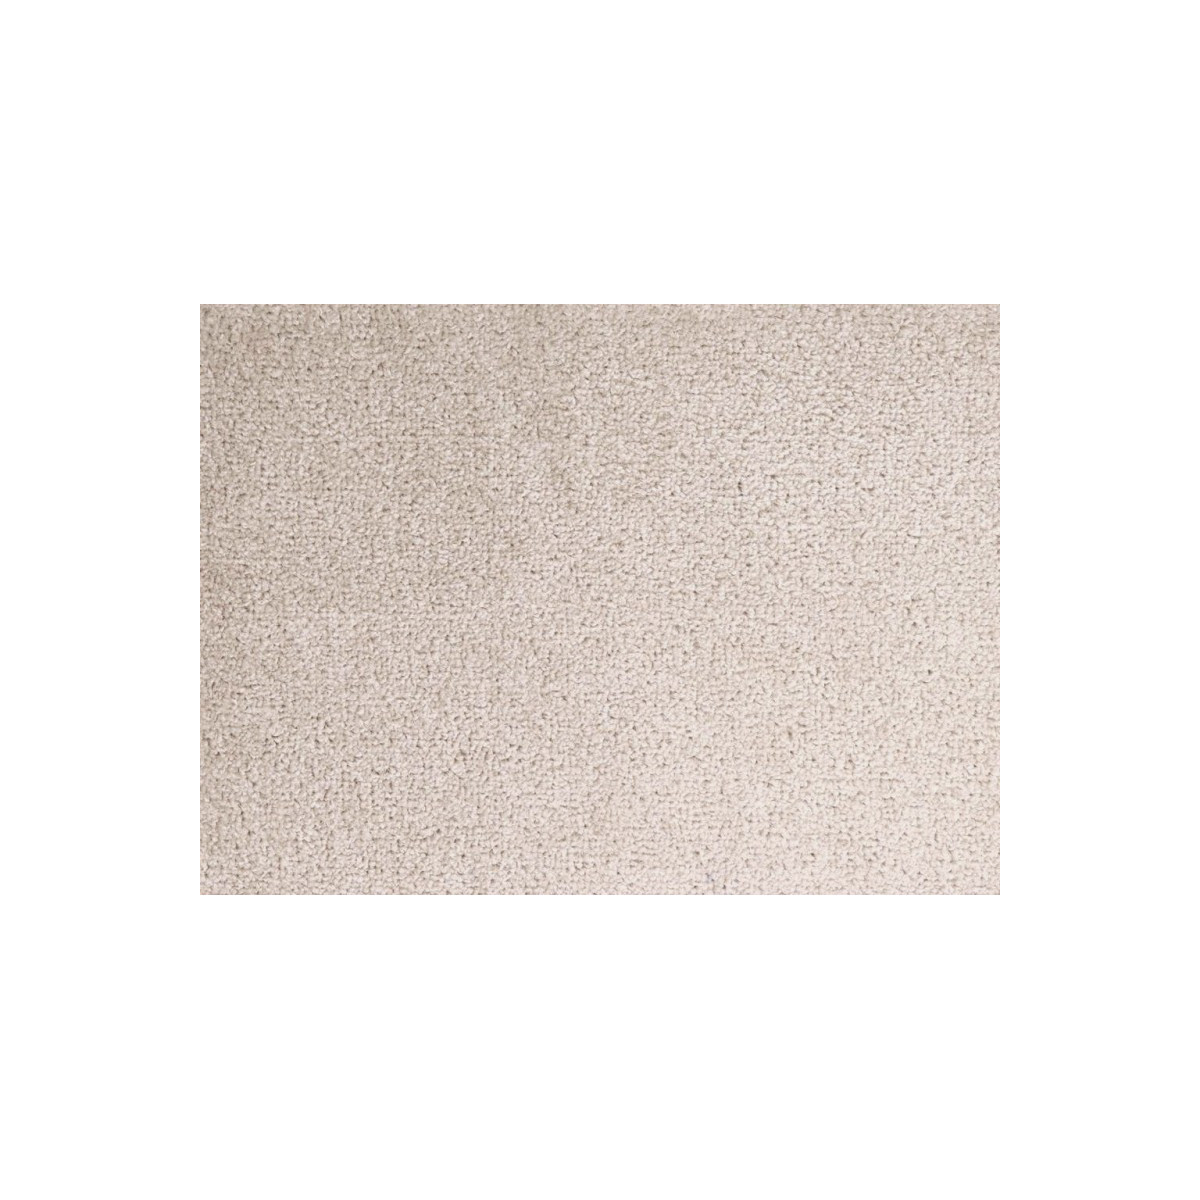 AKCE: 210x350 cm Metrážový koberec Dynasty 91